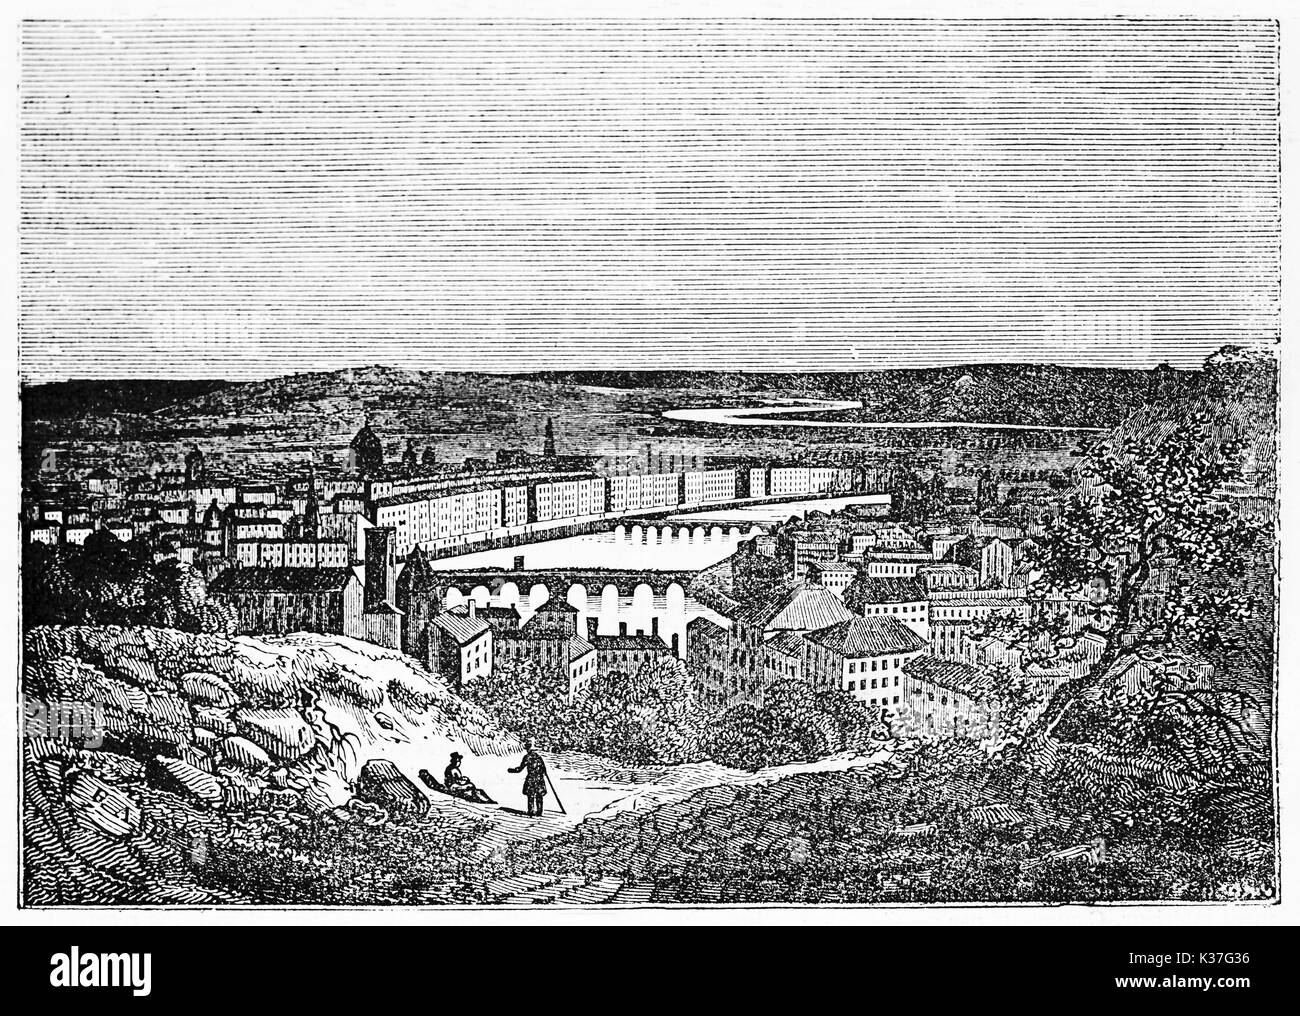 Vecchio cityscape vista da una sommità di una collina. Lione dal Croix-Rousse, Francia. Vecchia illustrazione di autore non identificato, pubblicato il Magasin pittoresco, Parigi, 1834 Foto Stock